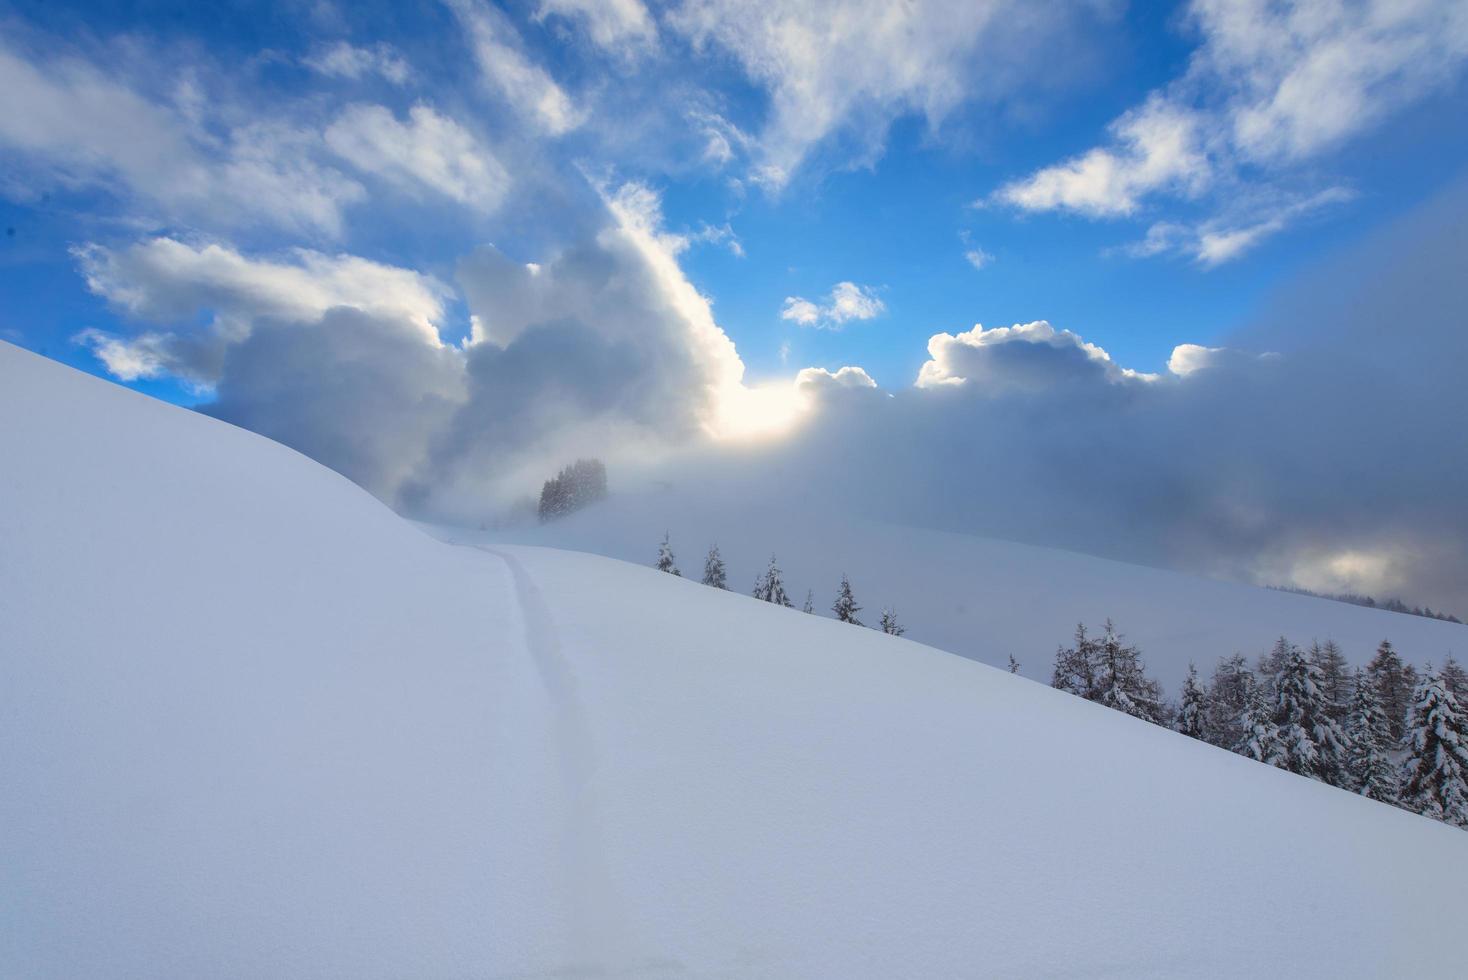 bergsbestigare skidåkarspår efter kraftigt snöfall i alperna foto